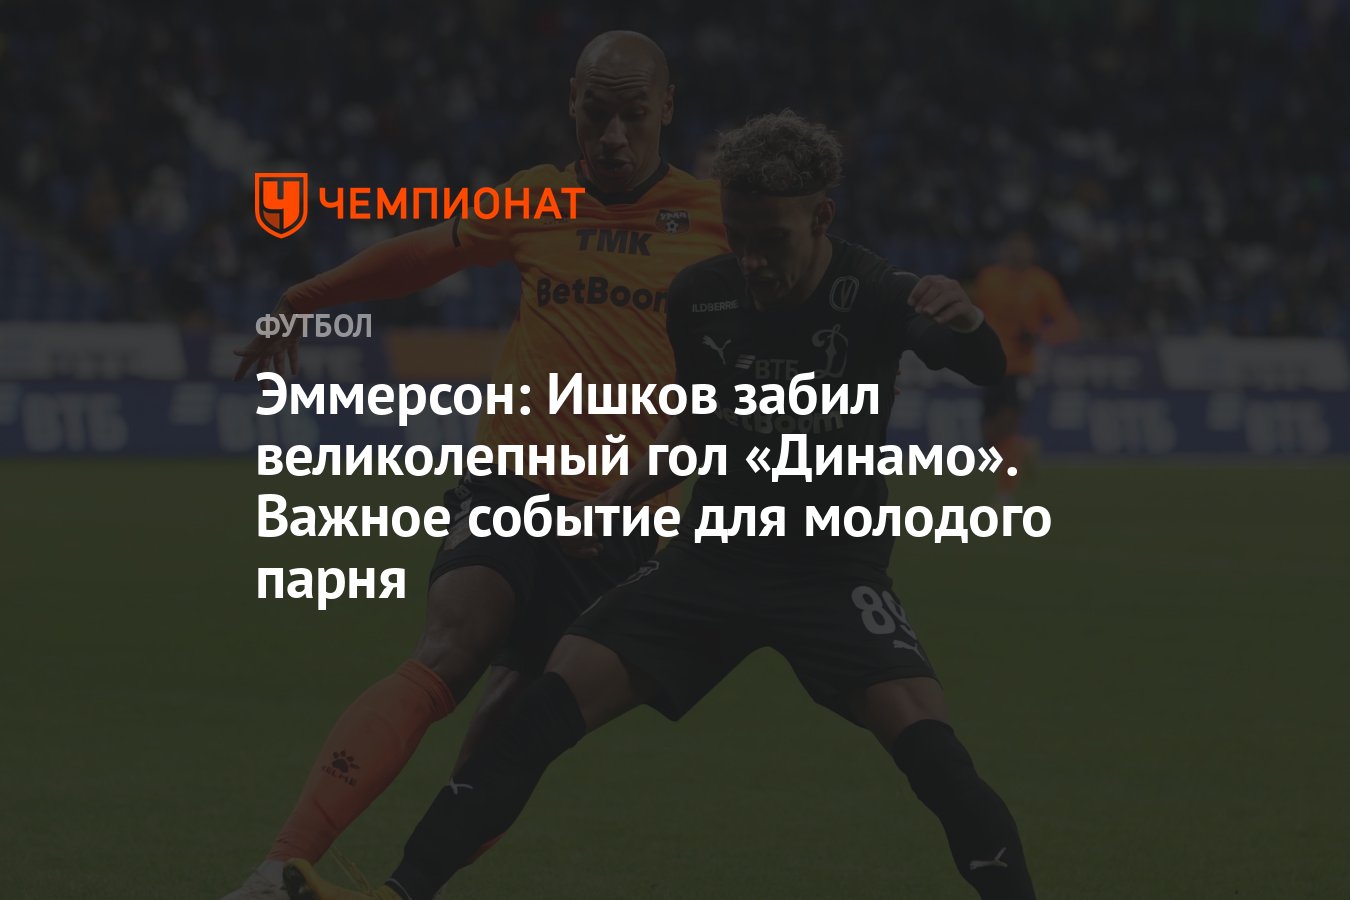 Эммерсон: Ишков забил великолепный гол «Динамо». Важное событие для  молодого парня - Чемпионат